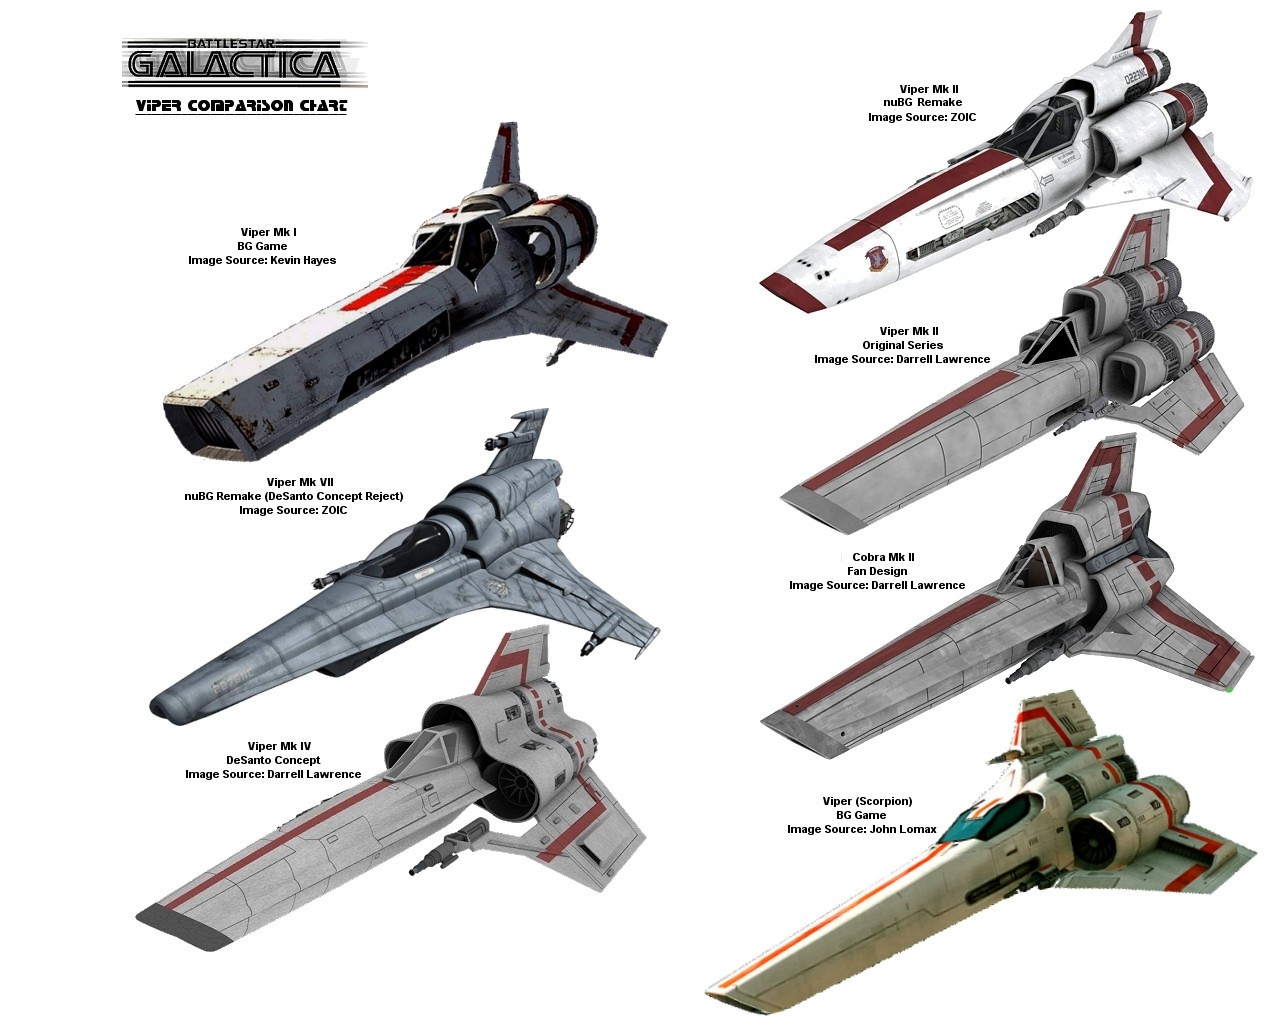 Wallpaper Battlestar Galactica - Battlestar Galacticâ , HD Wallpaper & Backgrounds